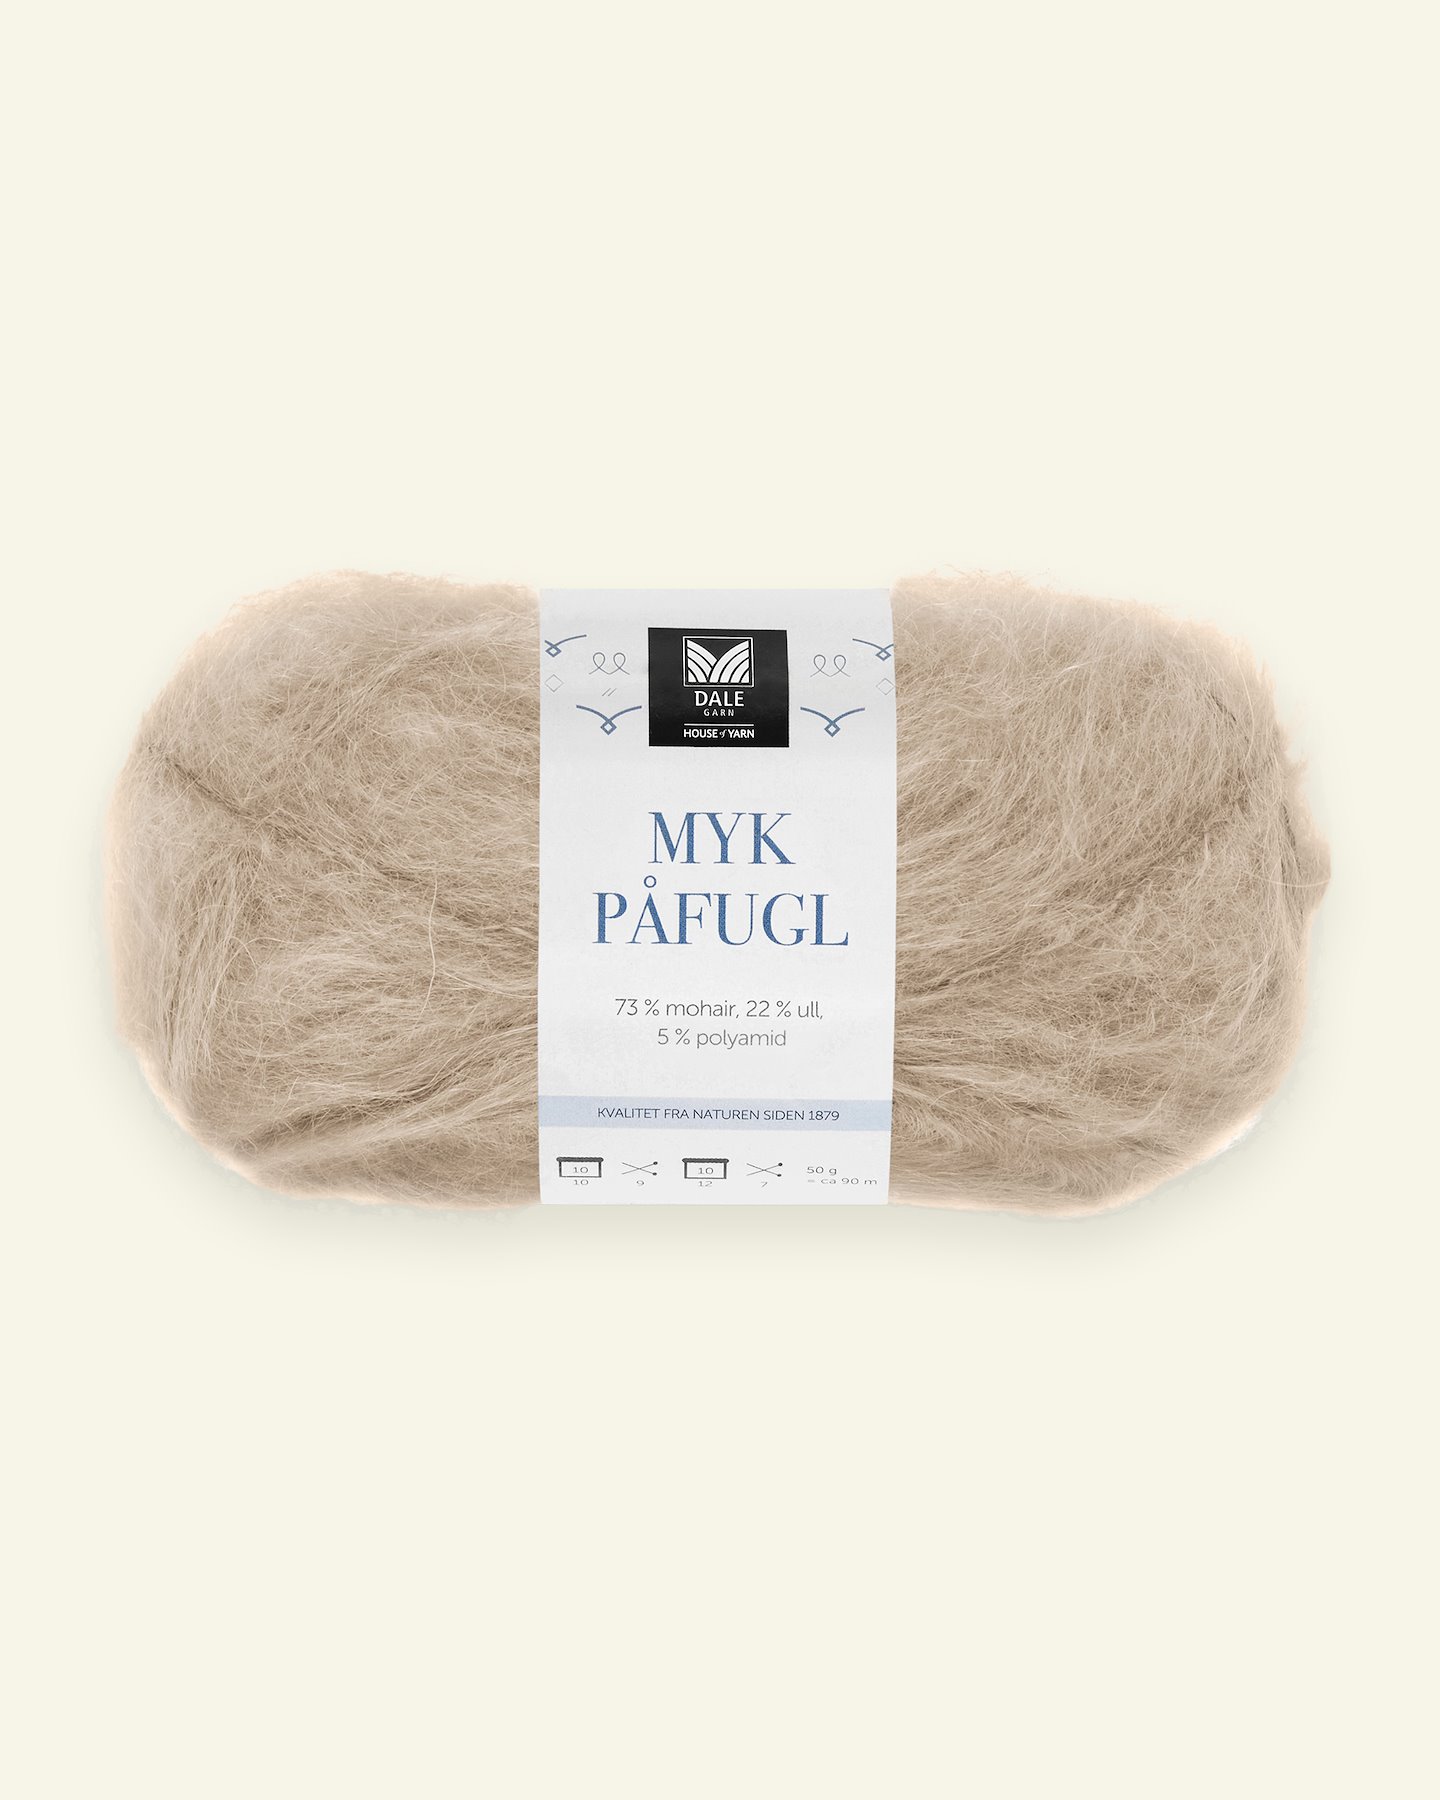 Dale Garn, mohair/wool yarn "Myk Påfugl", beige (3041) 90000271_pack